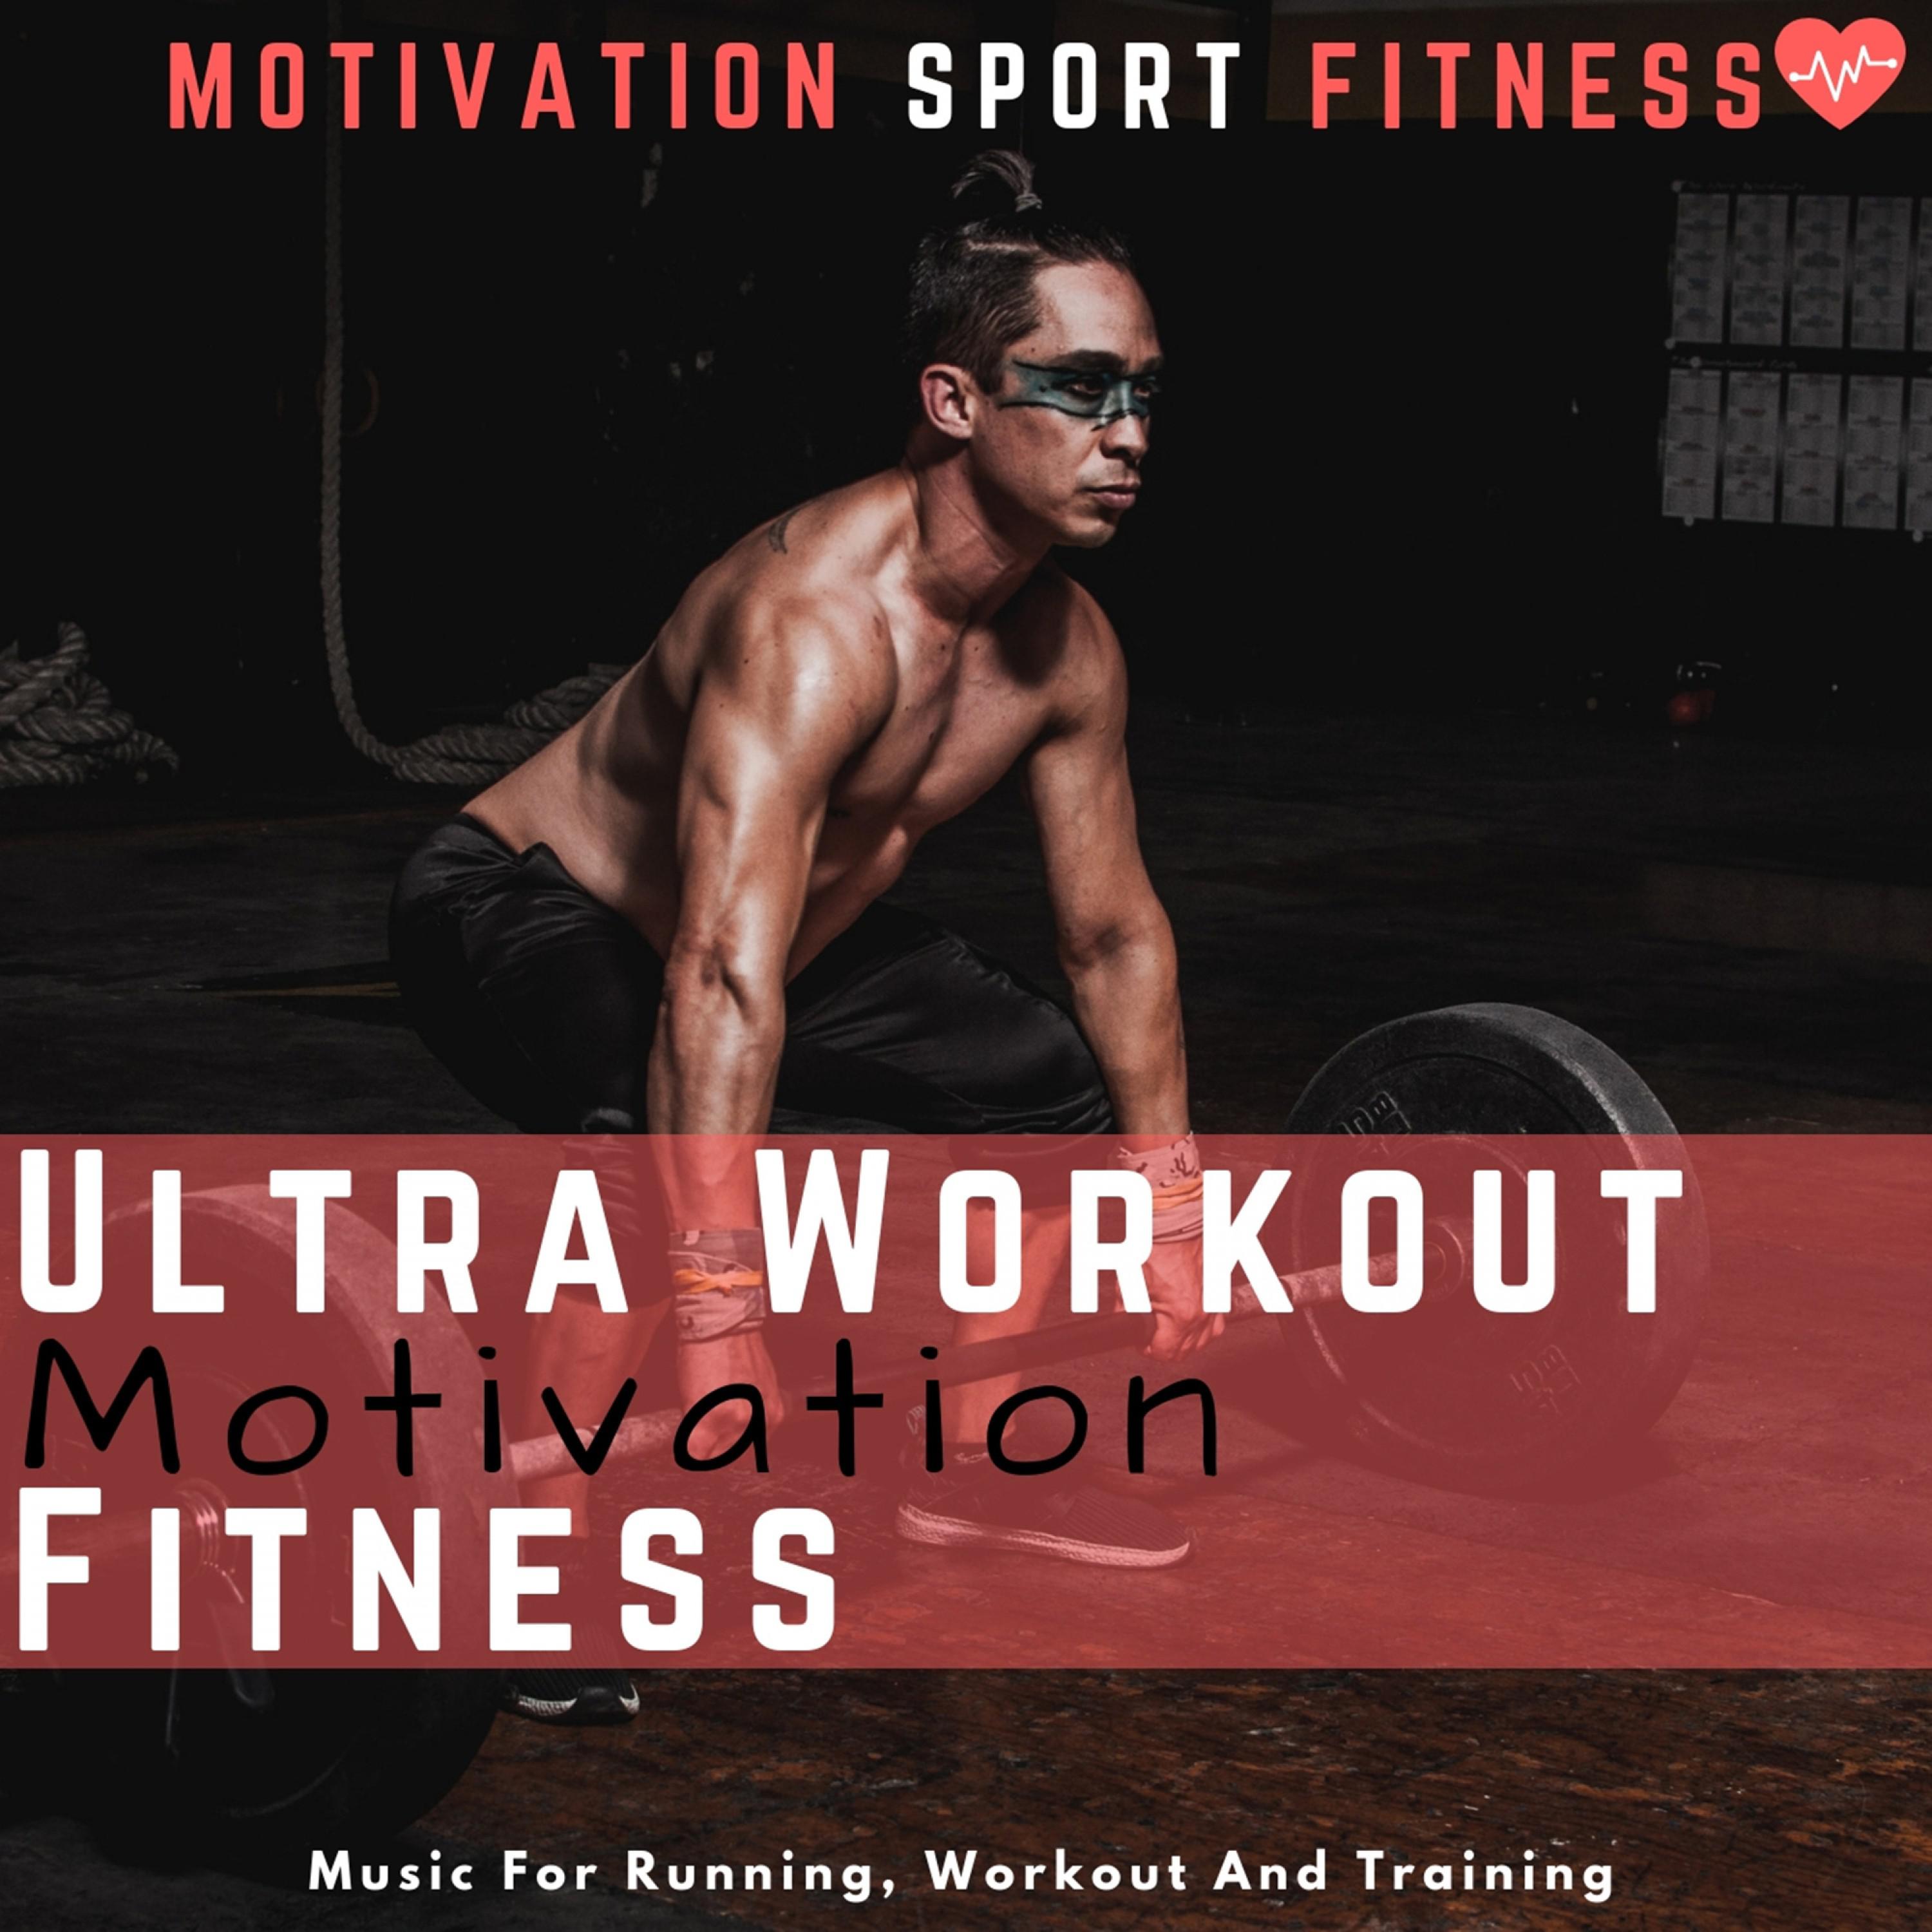 Ultra Workout Motivation Fitness